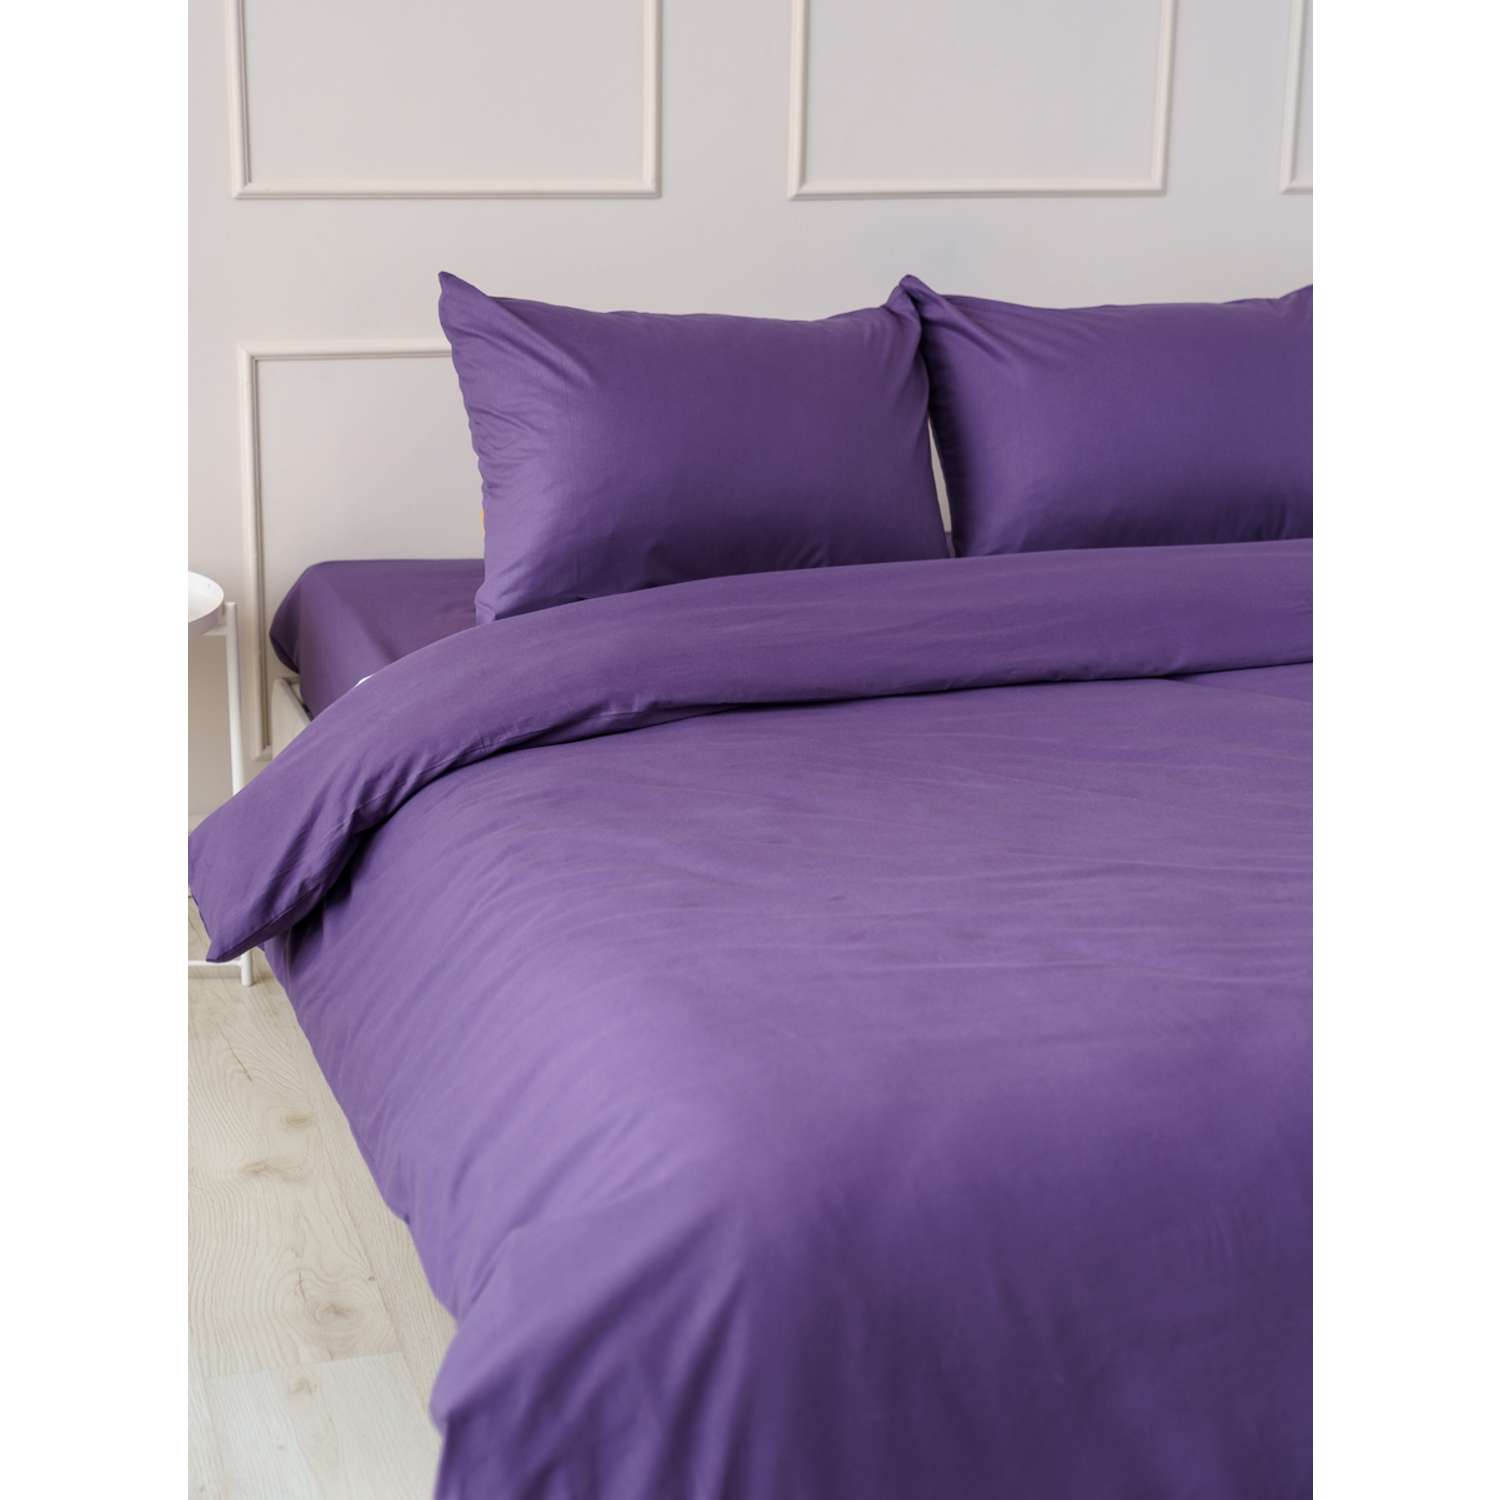 Комплект постельного белья IDEASON поплин 3 предмета 1.5 сп. фиолетовый - фото 4